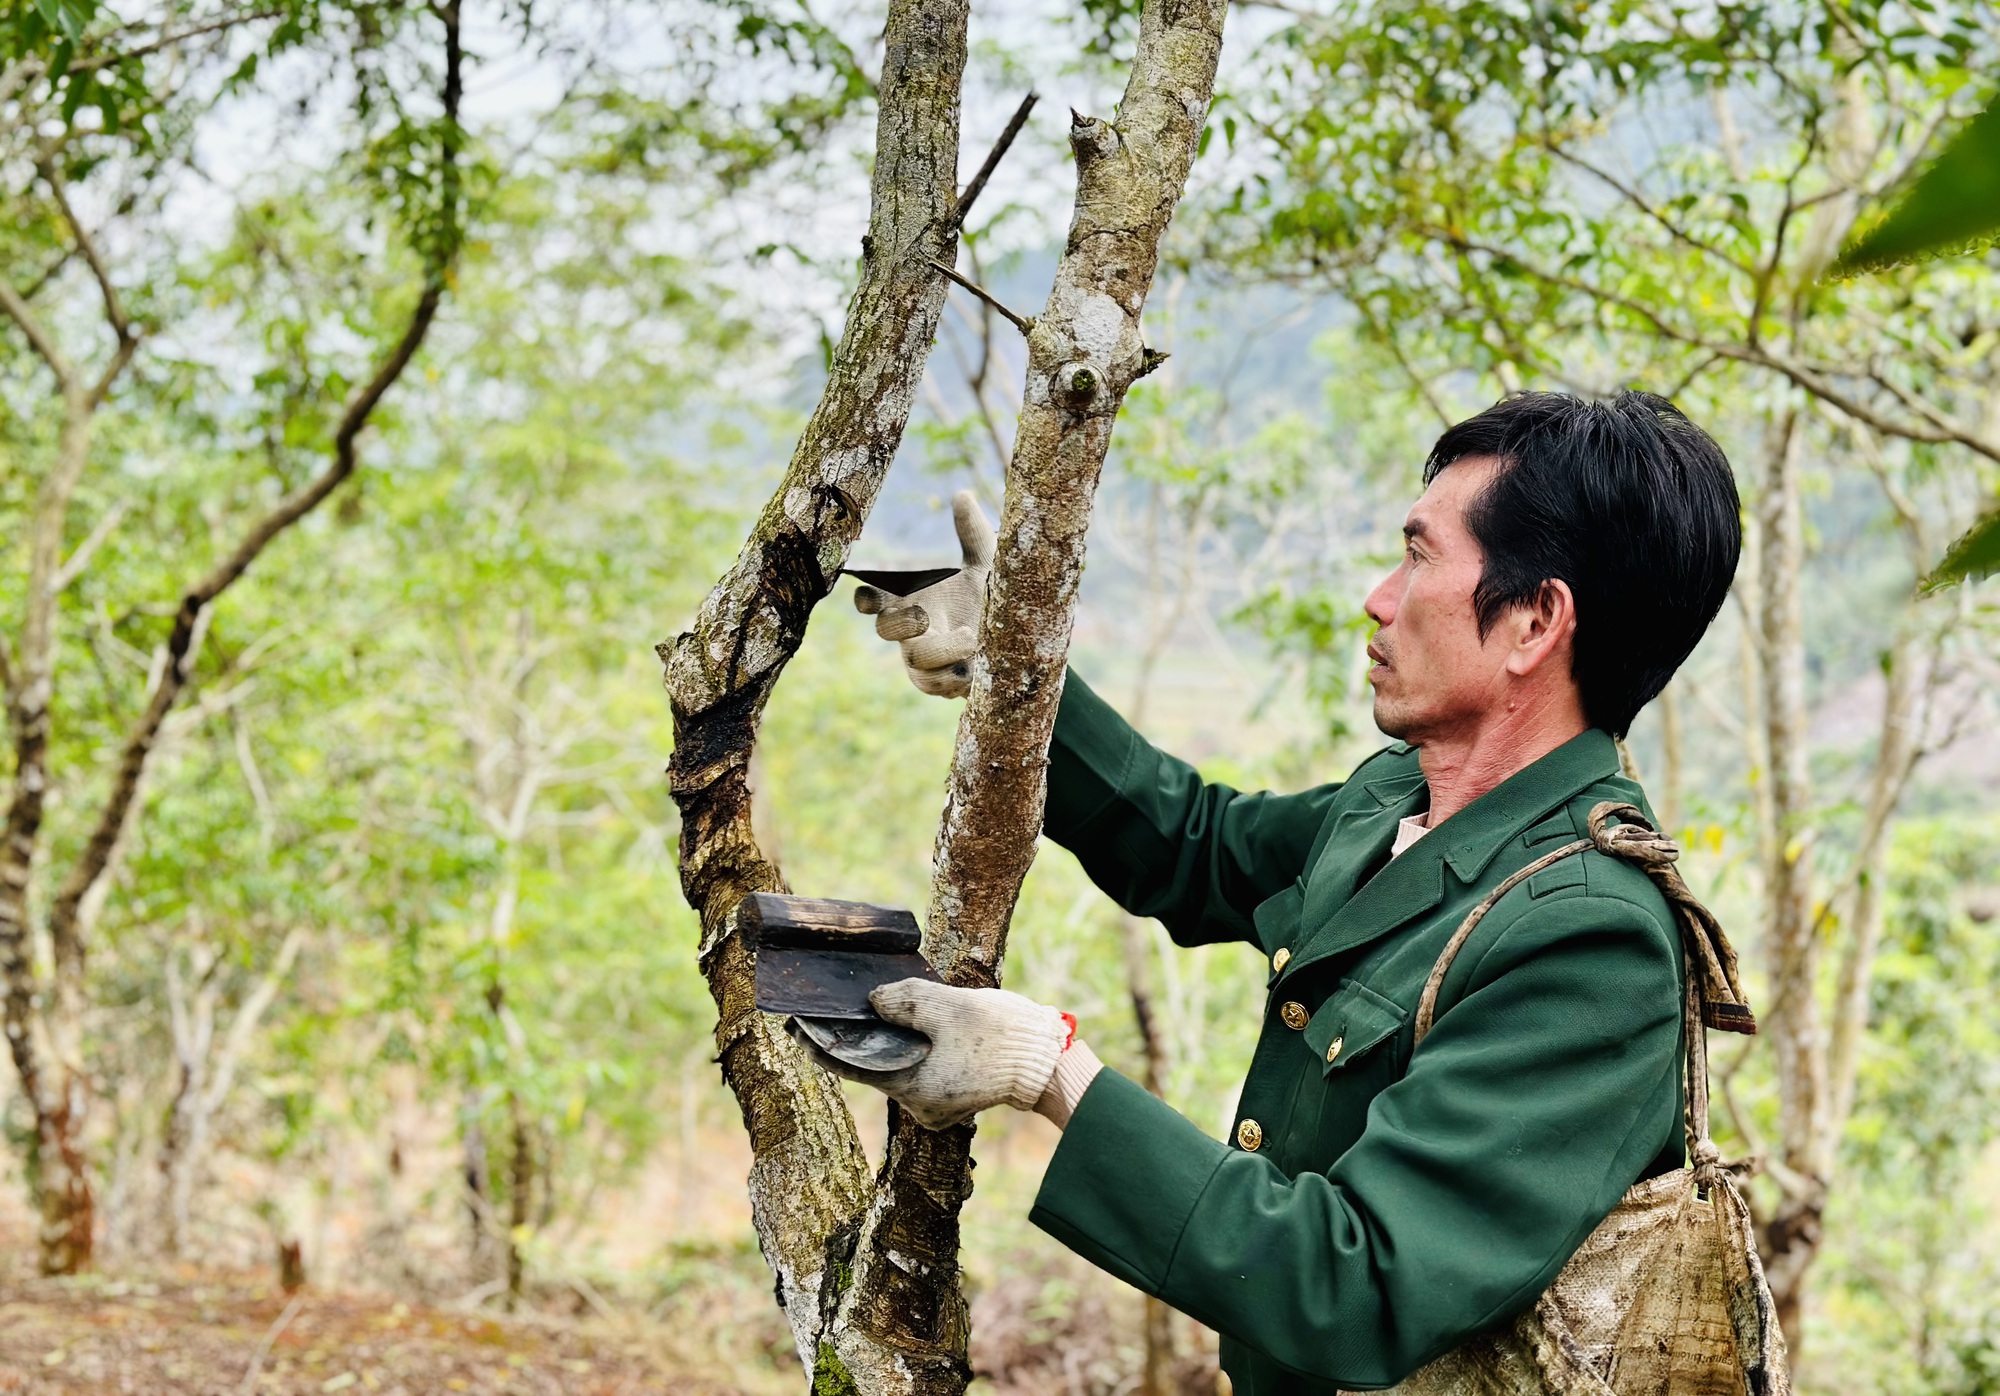 Trồng cây sơn, cây ba kích trên rừng, bán nhựa, bán củ mà một nông dân Hà Giang thu cả tỷ đồng - Ảnh 1.